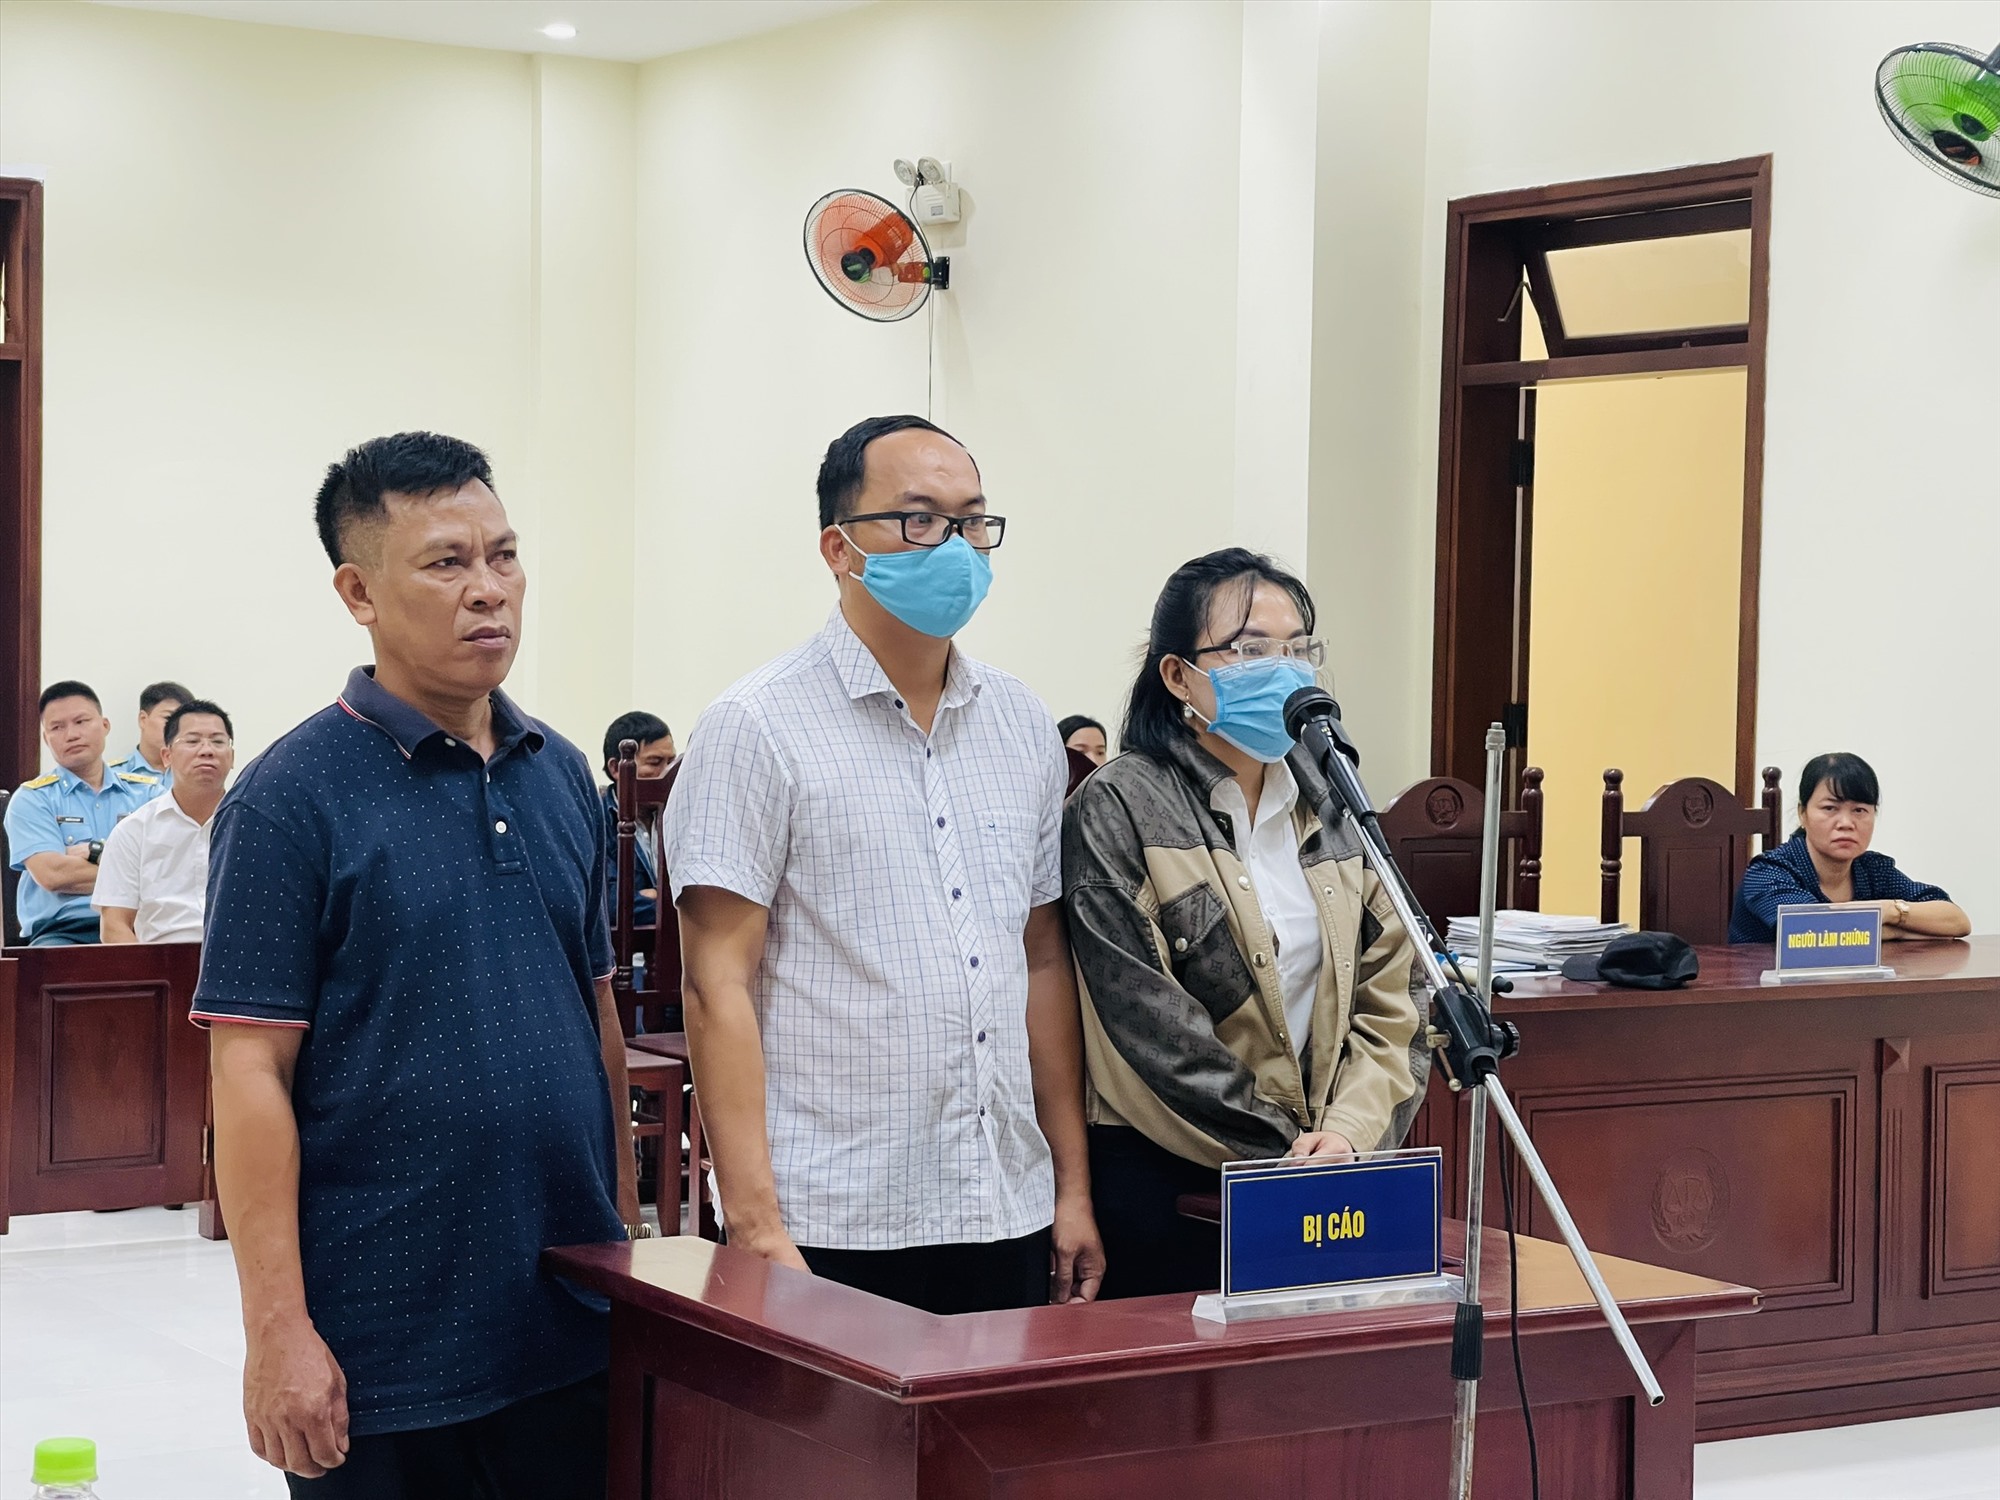 Mở phiên tòa phúc thẩm cựu thiếu tá tông chết nữ sinh lớp 12 ở Ninh Thuận- Ảnh 1.